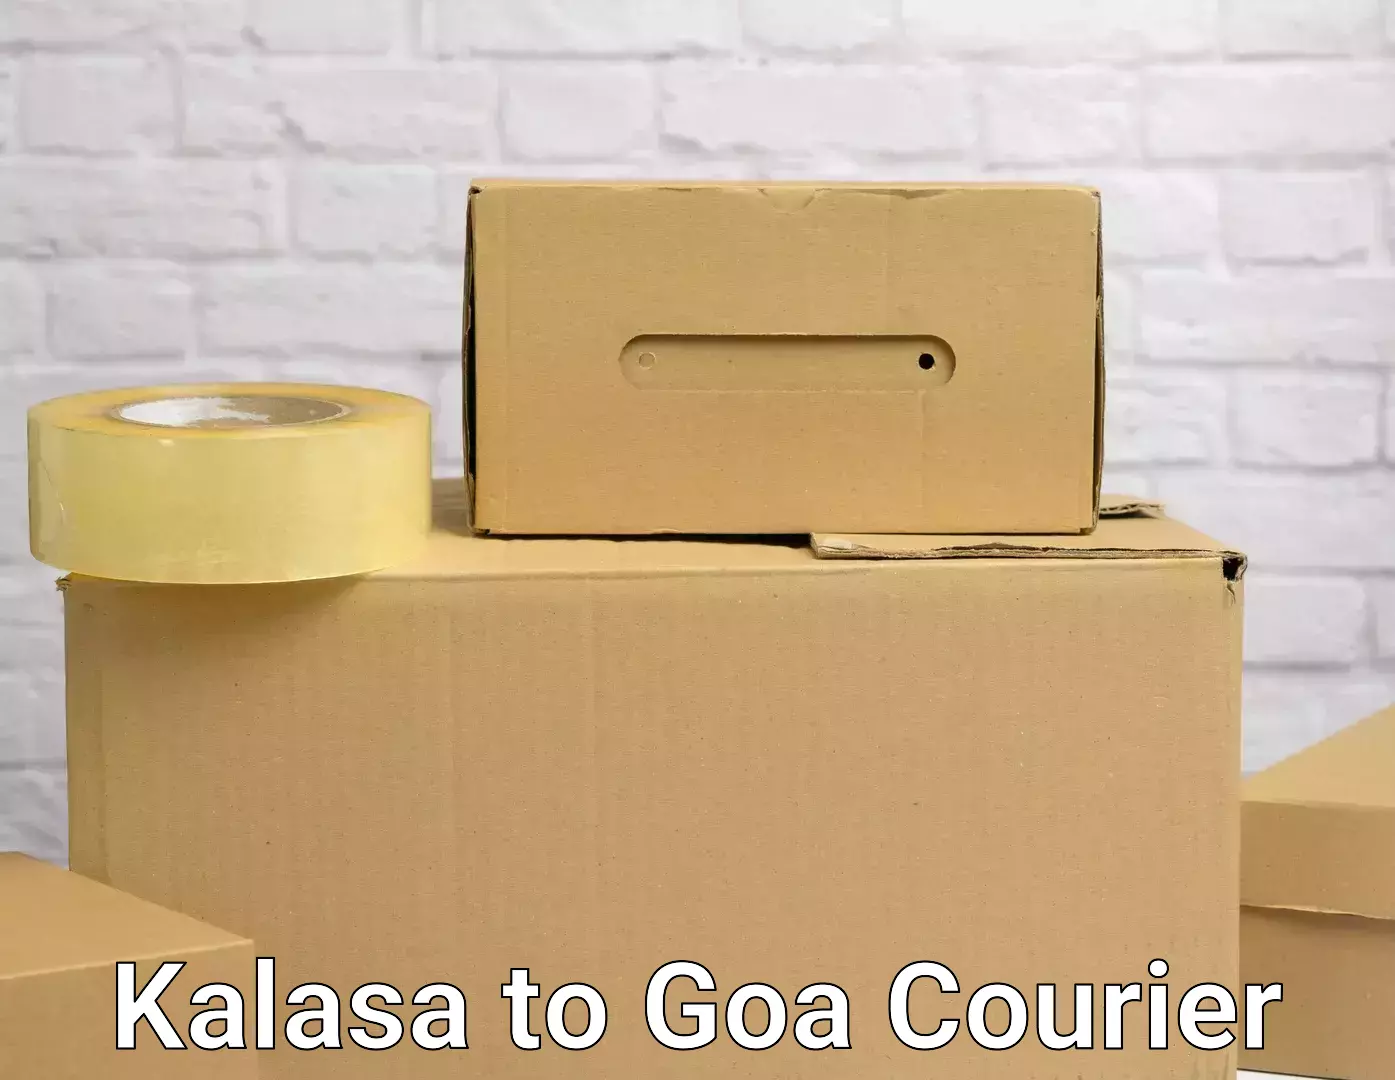 Moving service excellence Kalasa to Goa